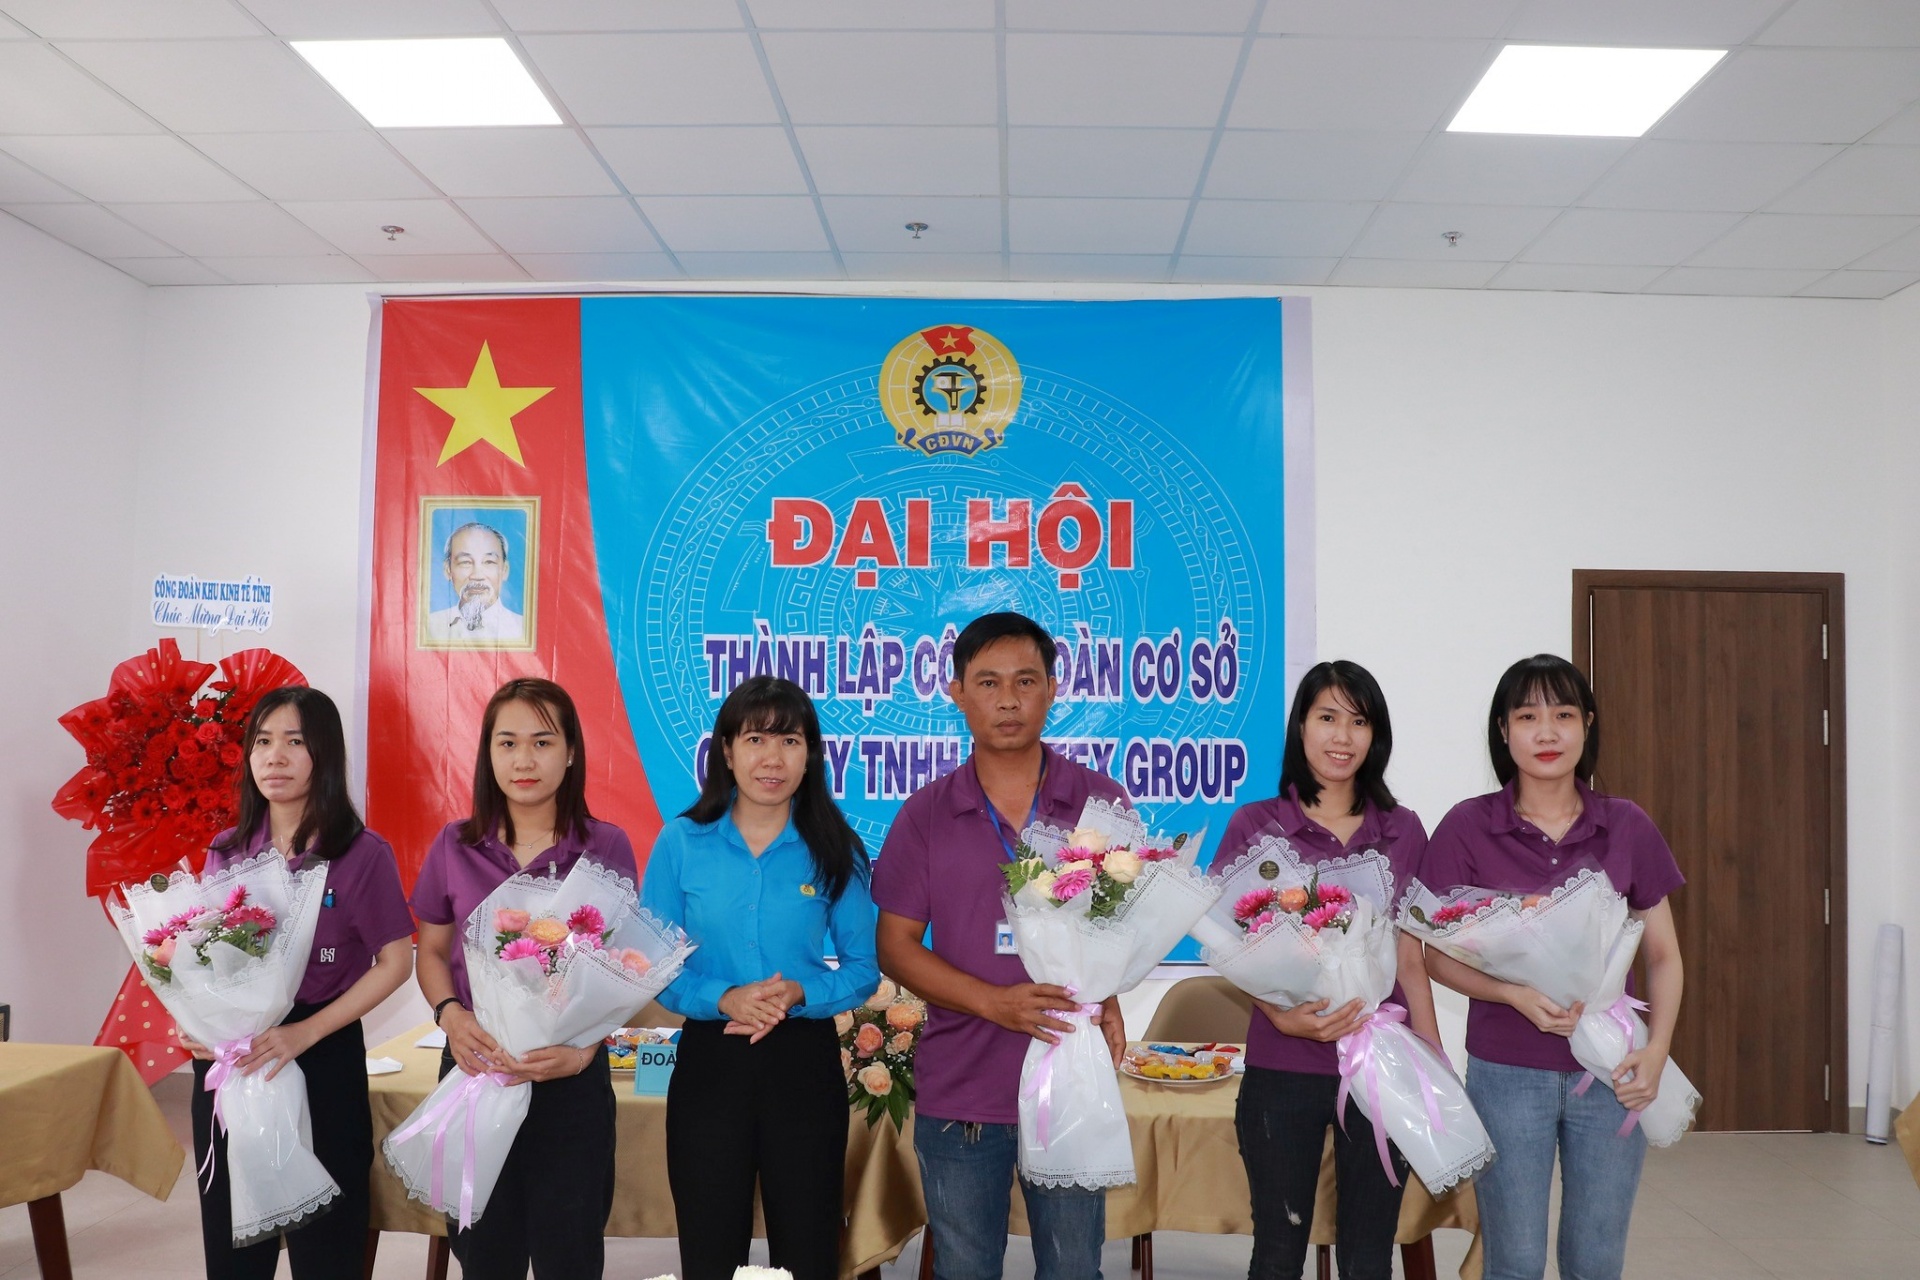 Công đoàn Khu kinh tế Tây Ninh: Tiếp tục đổi mới hoạt động, tập trung chăm lo NLĐ